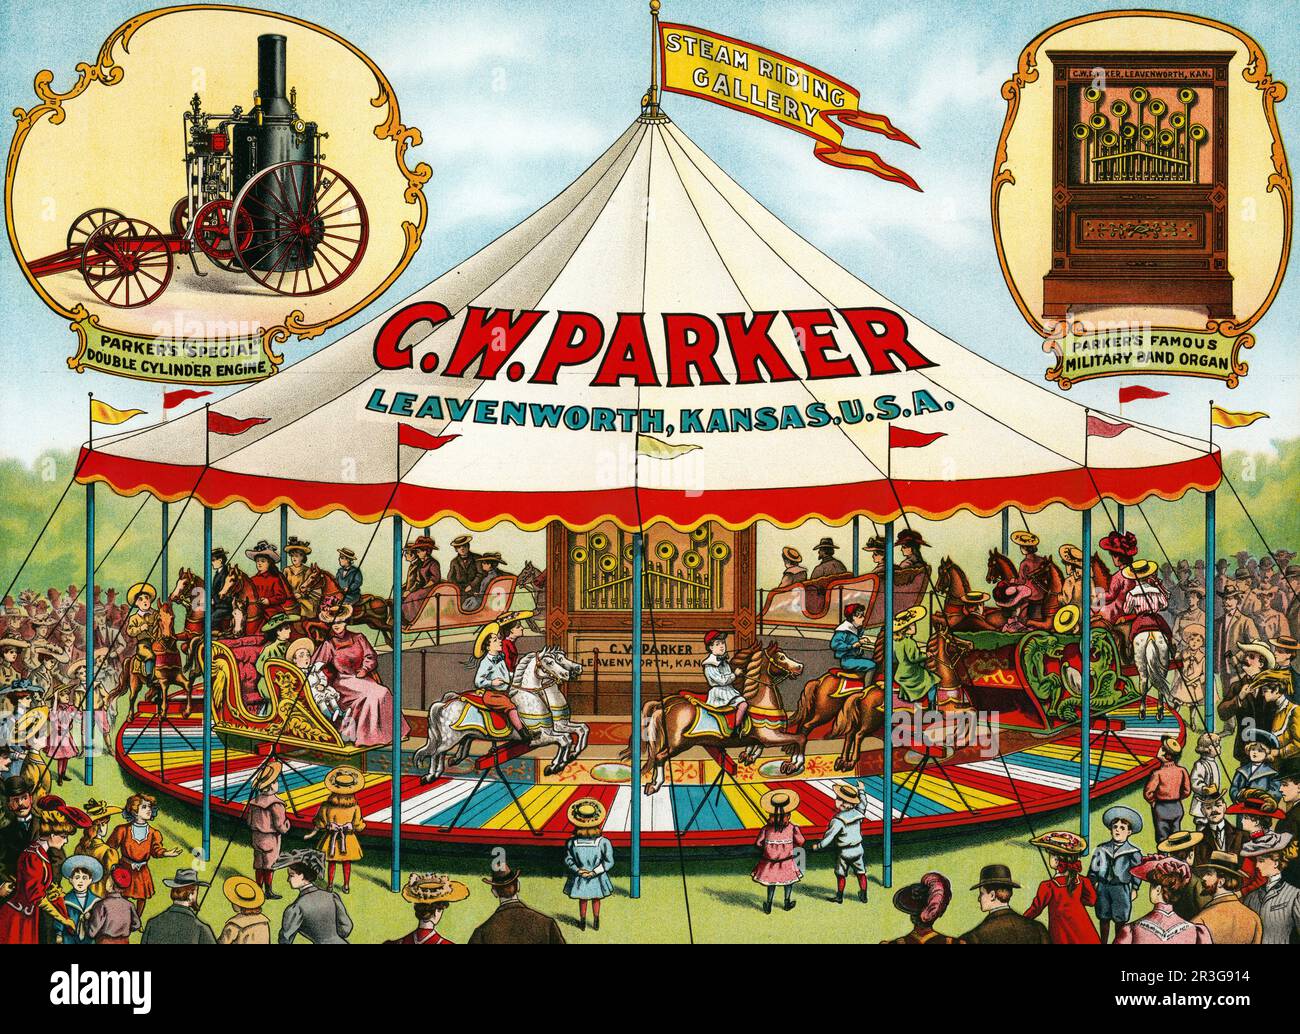 Poster circo vintage. C.W. Parker. Galleria di equitazione a vapore. Speciale motore a doppio cilindro. Organo a banda militare. Foto Stock